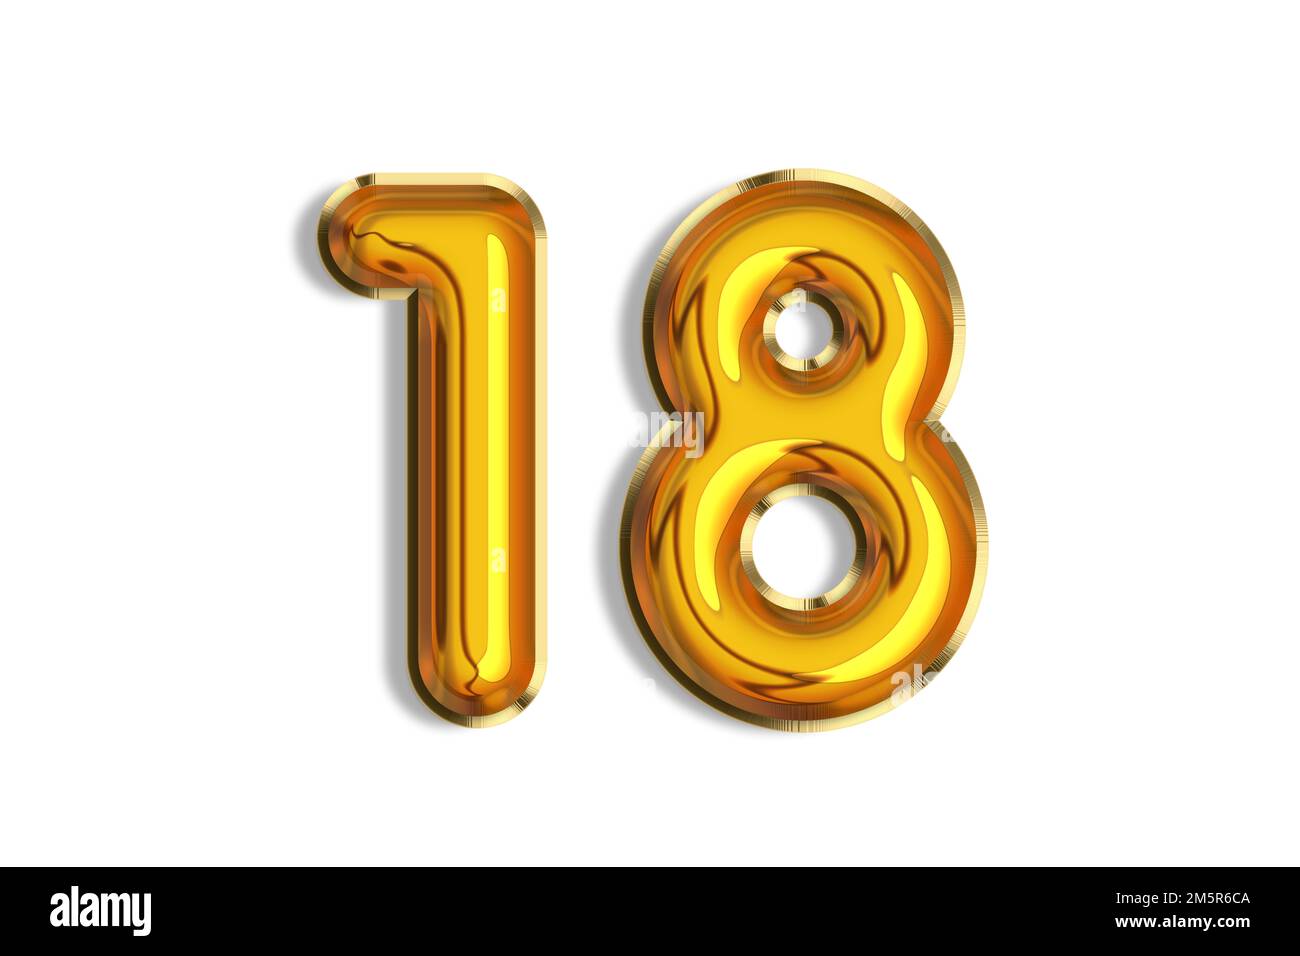 18 Jahre alt. Goldballons, 18.-Jubiläumsnummer, alles gute zum Geburtstag, Herzlichen Glückwunsch. Darstellung goldener realistischer 3D-Symbole. Banner, Symbole isola Stockfoto